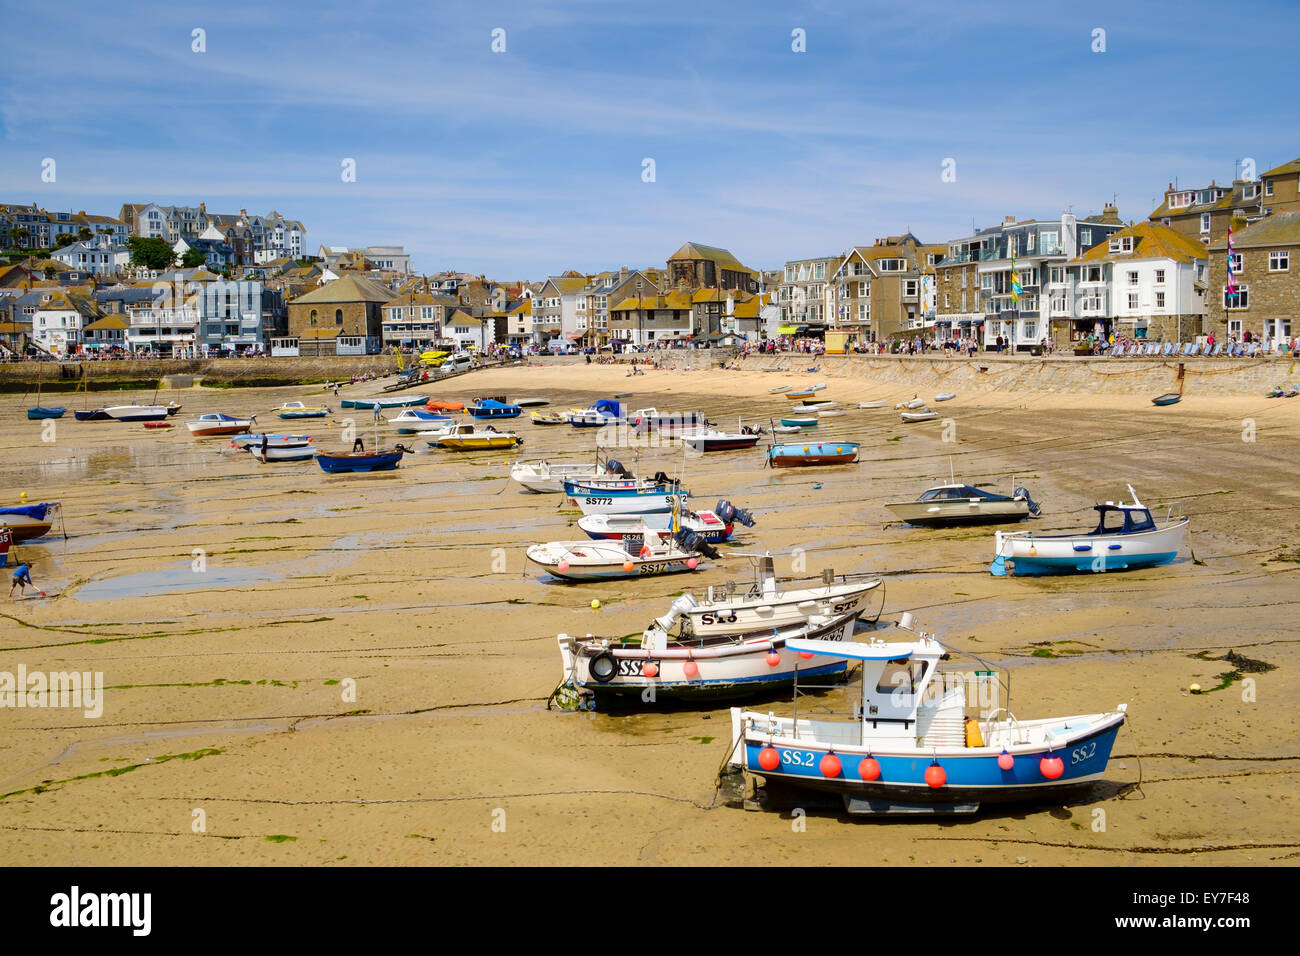 St Ives, Cornwall, Inglaterra, Reino Unido - El puerto, la playa y los barcos de pesca en la marea baja en verano Foto de stock